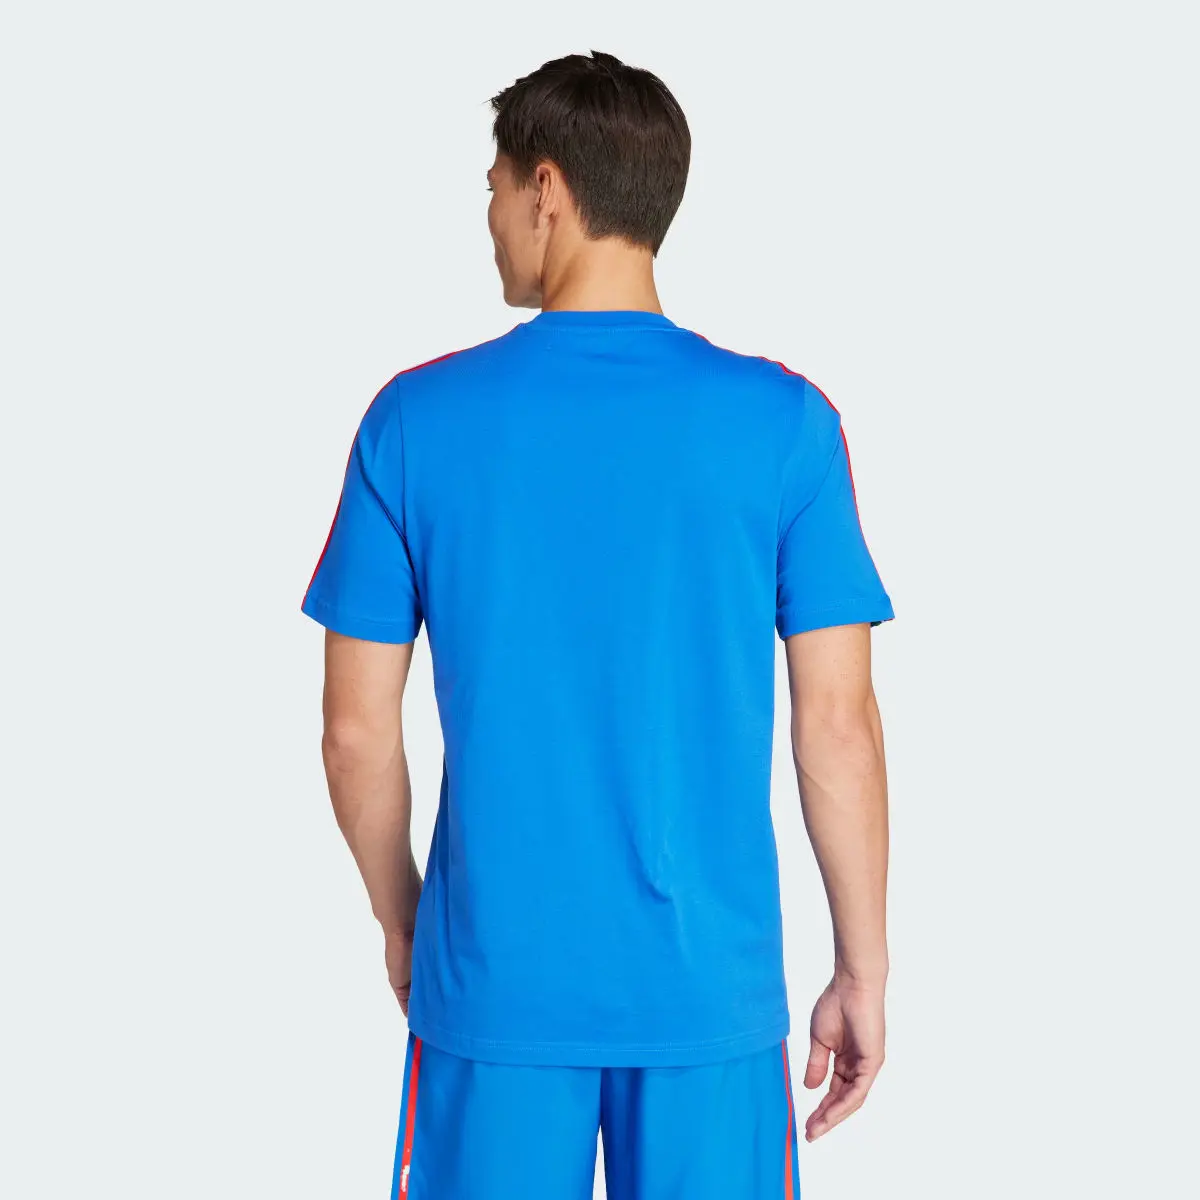 Adidas T-shirt 3-Stripes DNA da Itália. 3